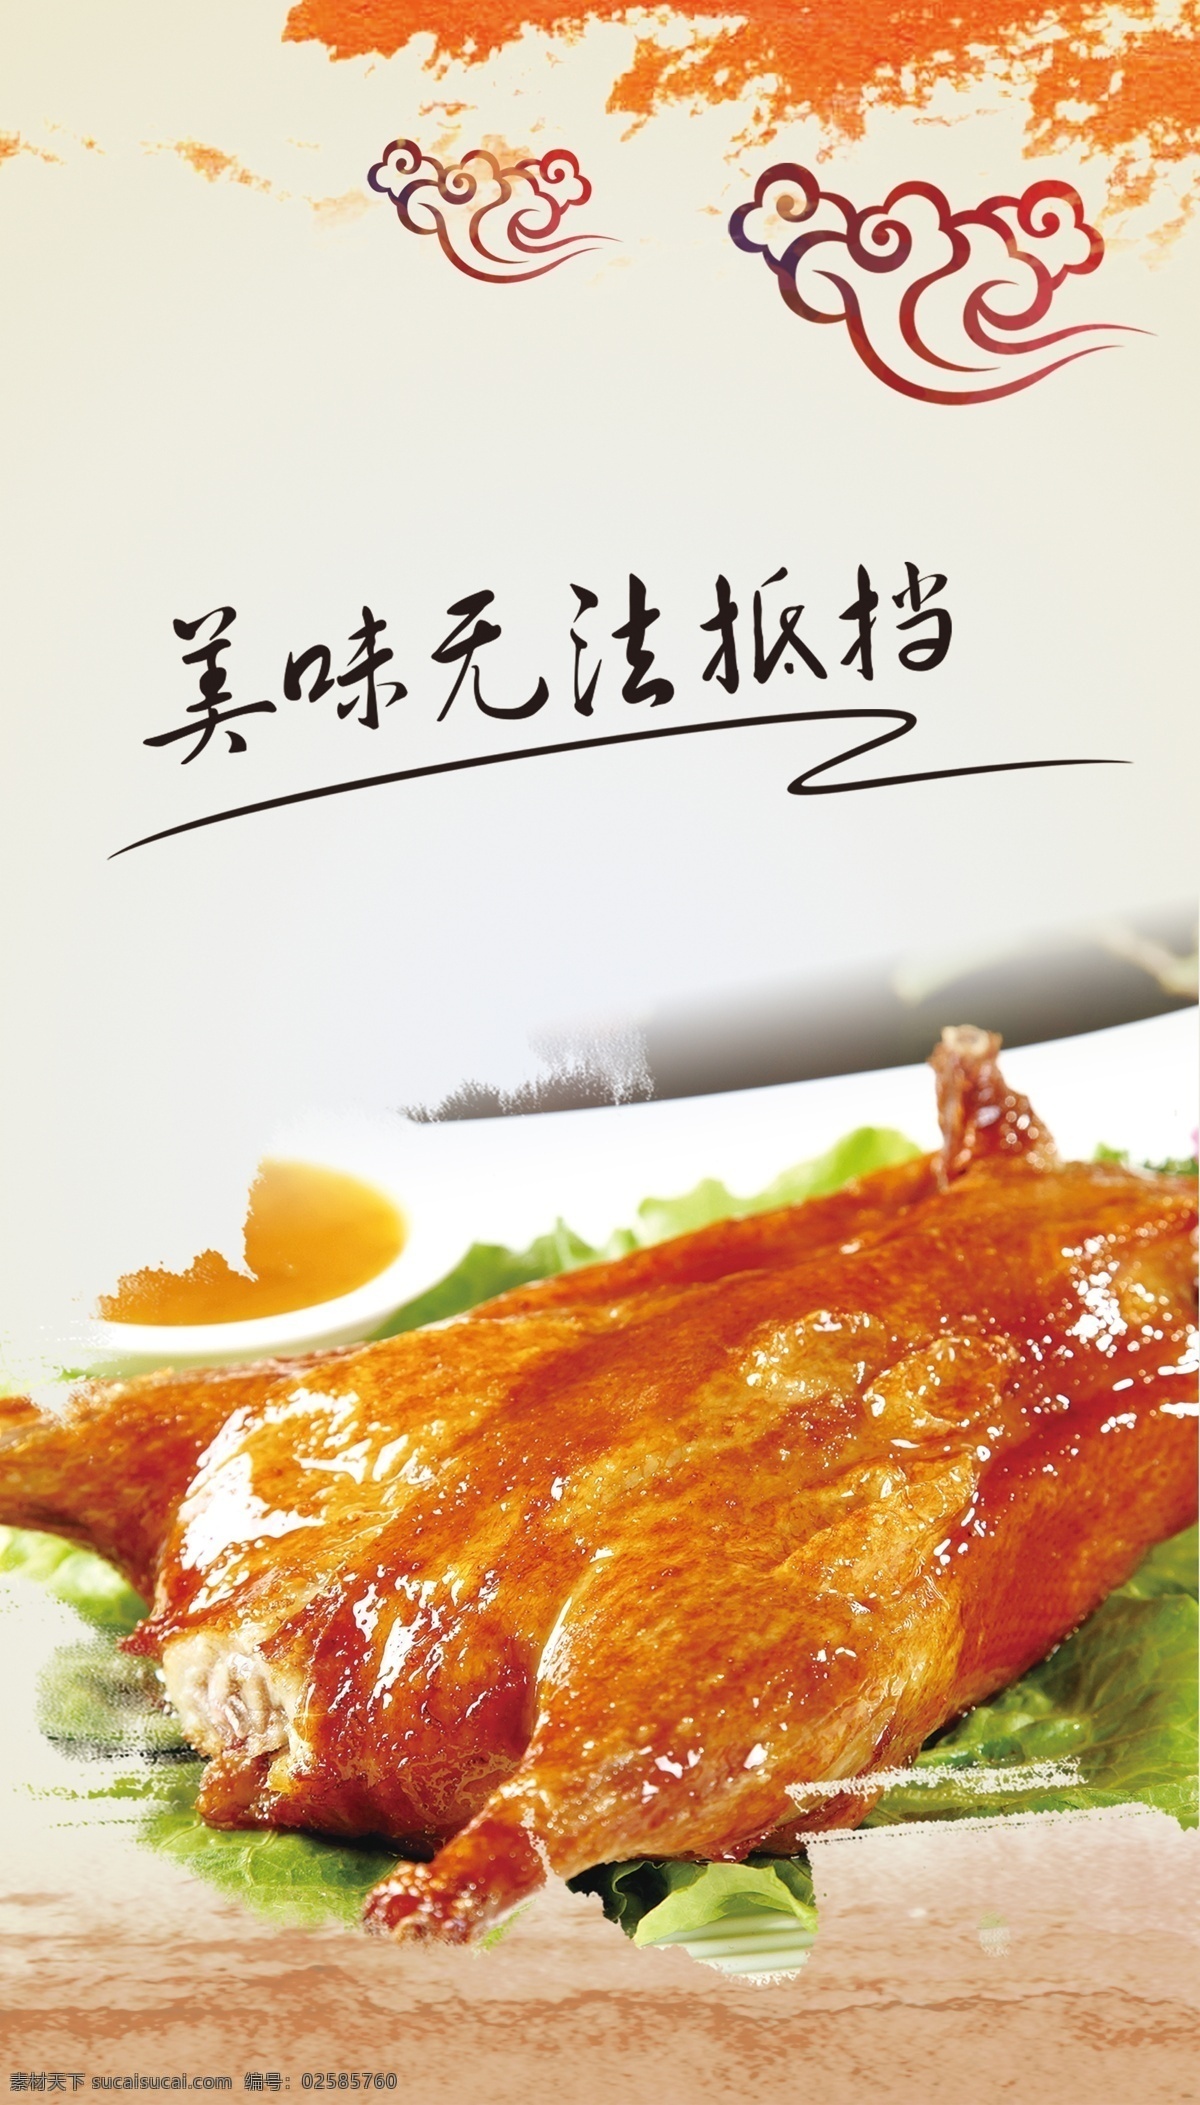 烤鸭图片 北京烤鸭 烤鸭海报 烤鸭写真 广告 海报